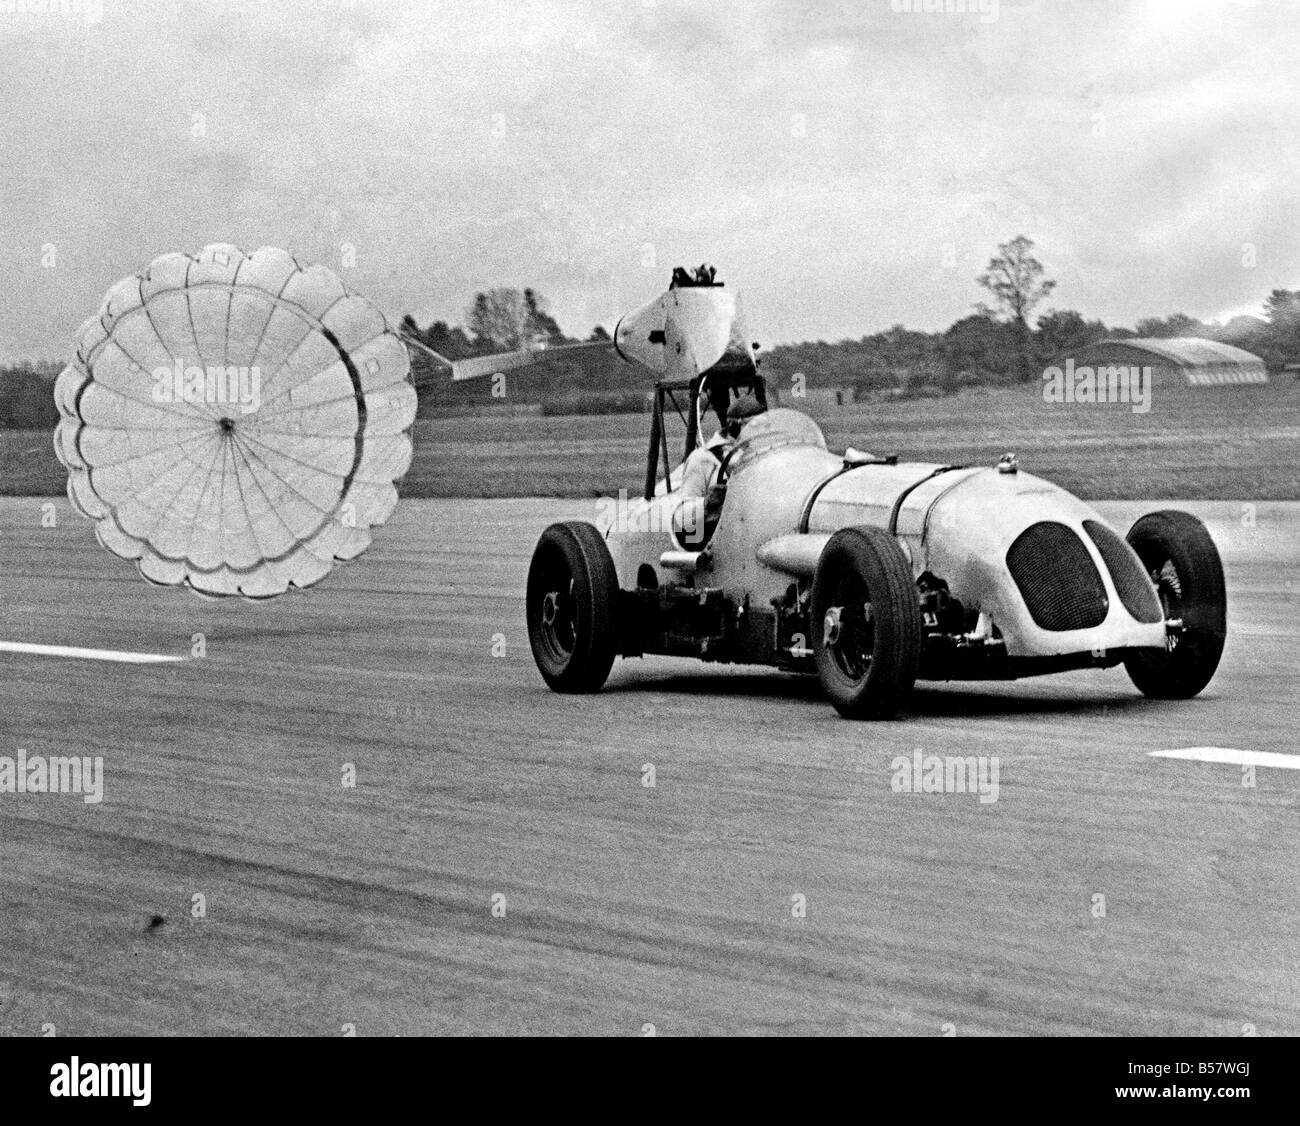 una-demostracion-de-los-aviones-paracaidas-freno-retractil-gq-tuvo-lugar-hoy-en-el-aerodromo-de-dunsfold-y-el-vehiculo-de-prueba-utilizado-fue-un-coche-de-carreras-que-establecio-su-primer-record-de-vuelta-en-brooklands-en-1933-en-mayo-de-1954-p004672-b57wgj.jpg